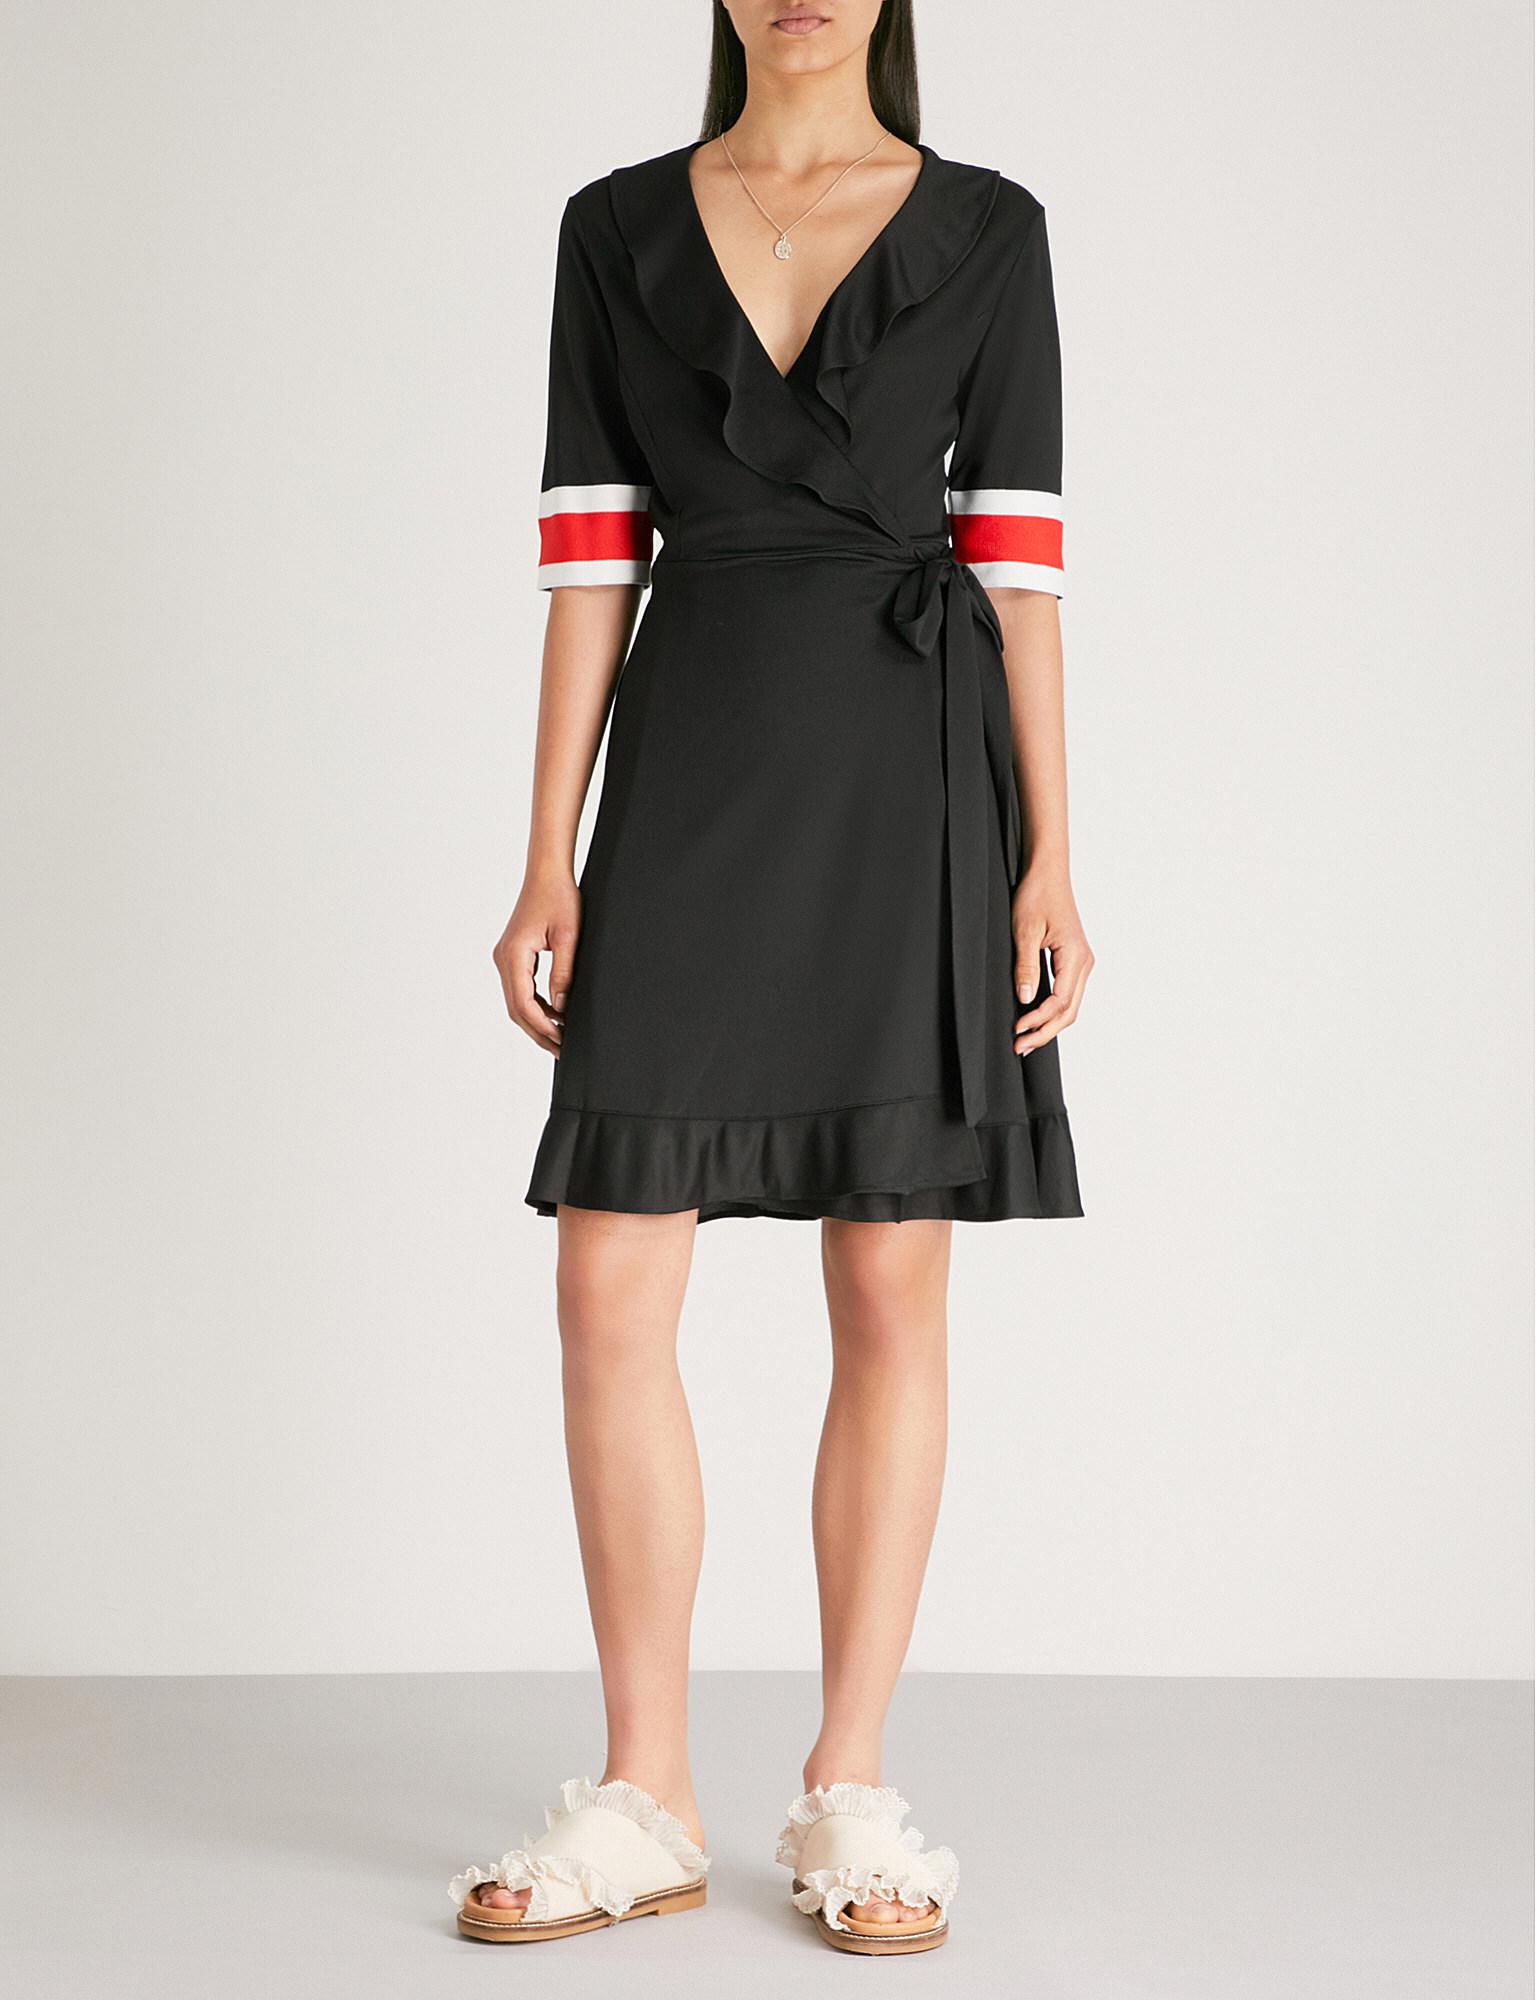 Ganni Dubois Polo Dress Flash Sales, 52% OFF | www.dalmar.it